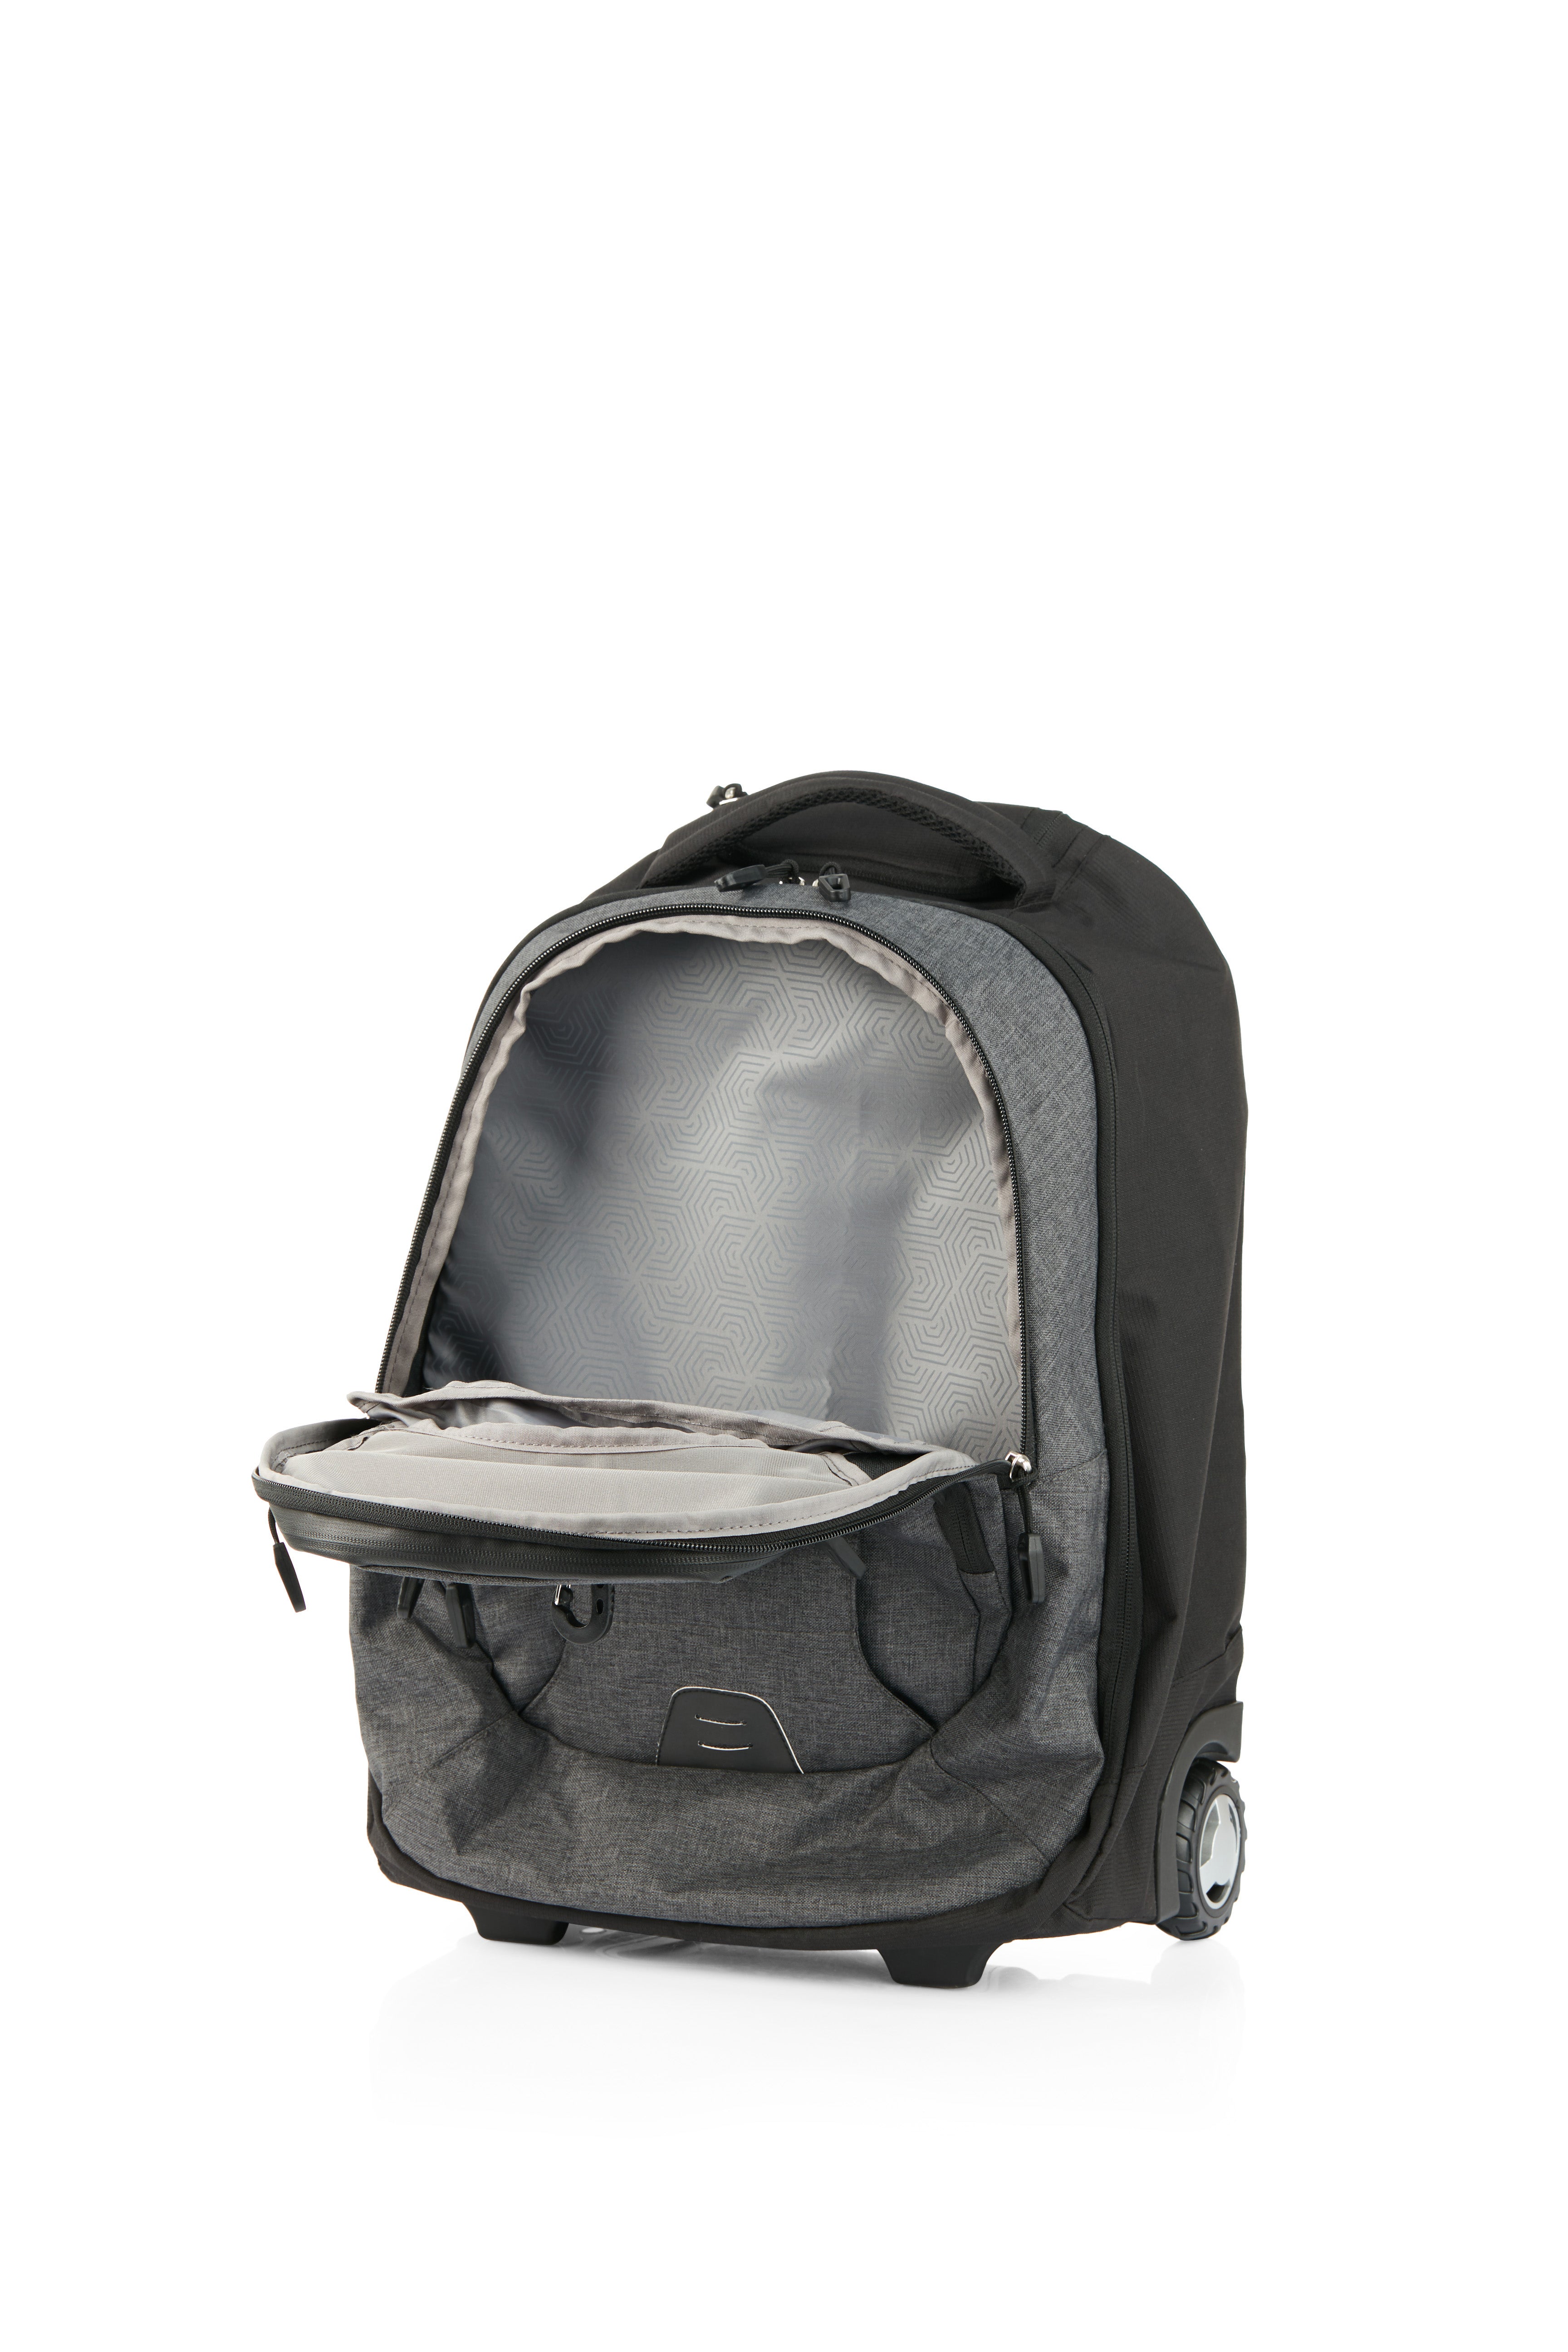 High Sierra - Jarvis Pro backpack on wheels - Black-8